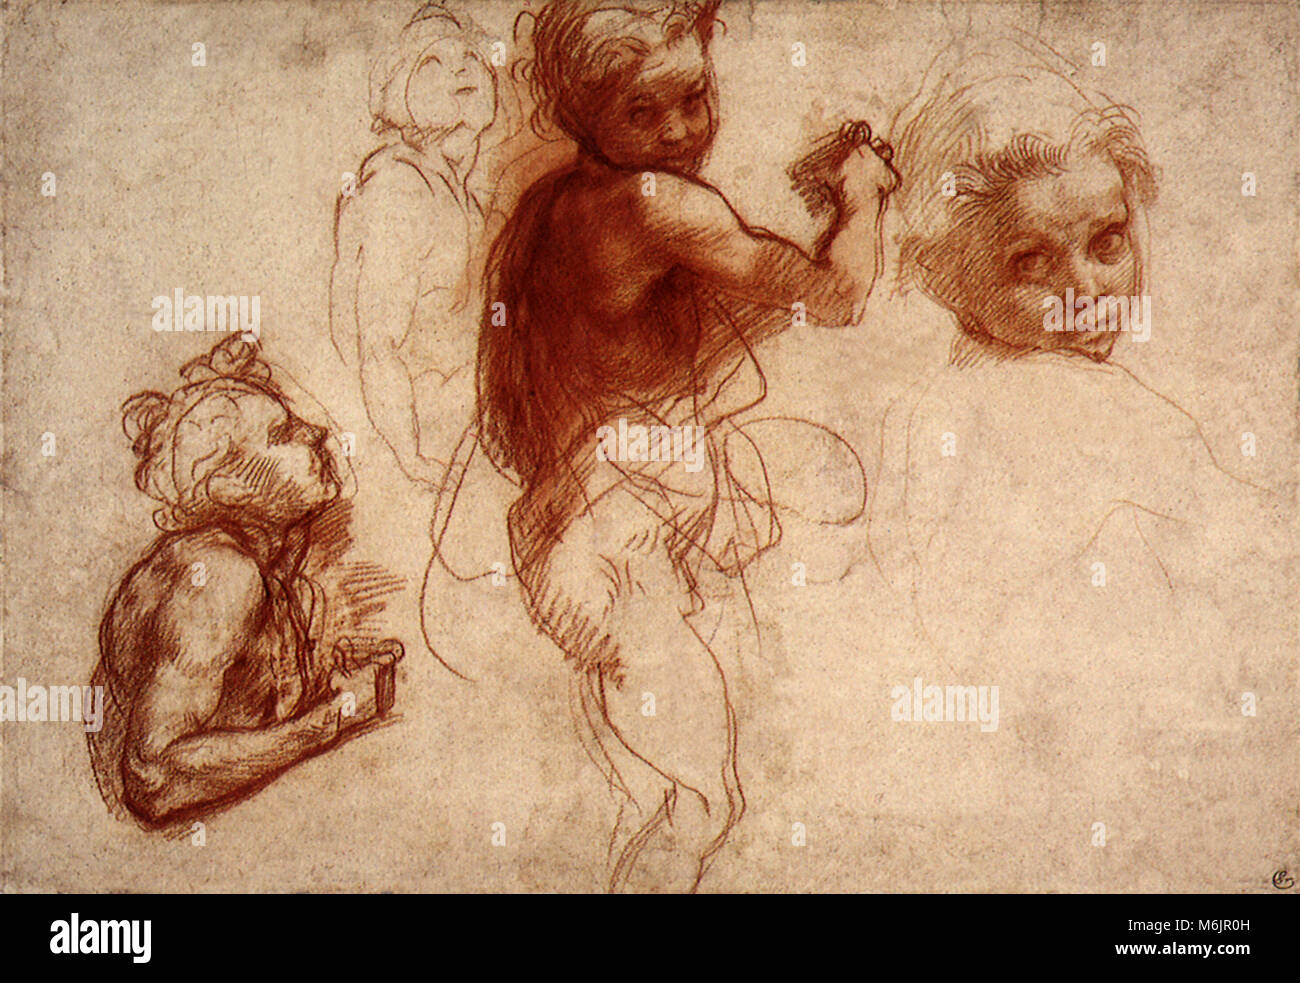 Four Studies of a Child, Sarto, Andrea del, 1520. Stock Photo